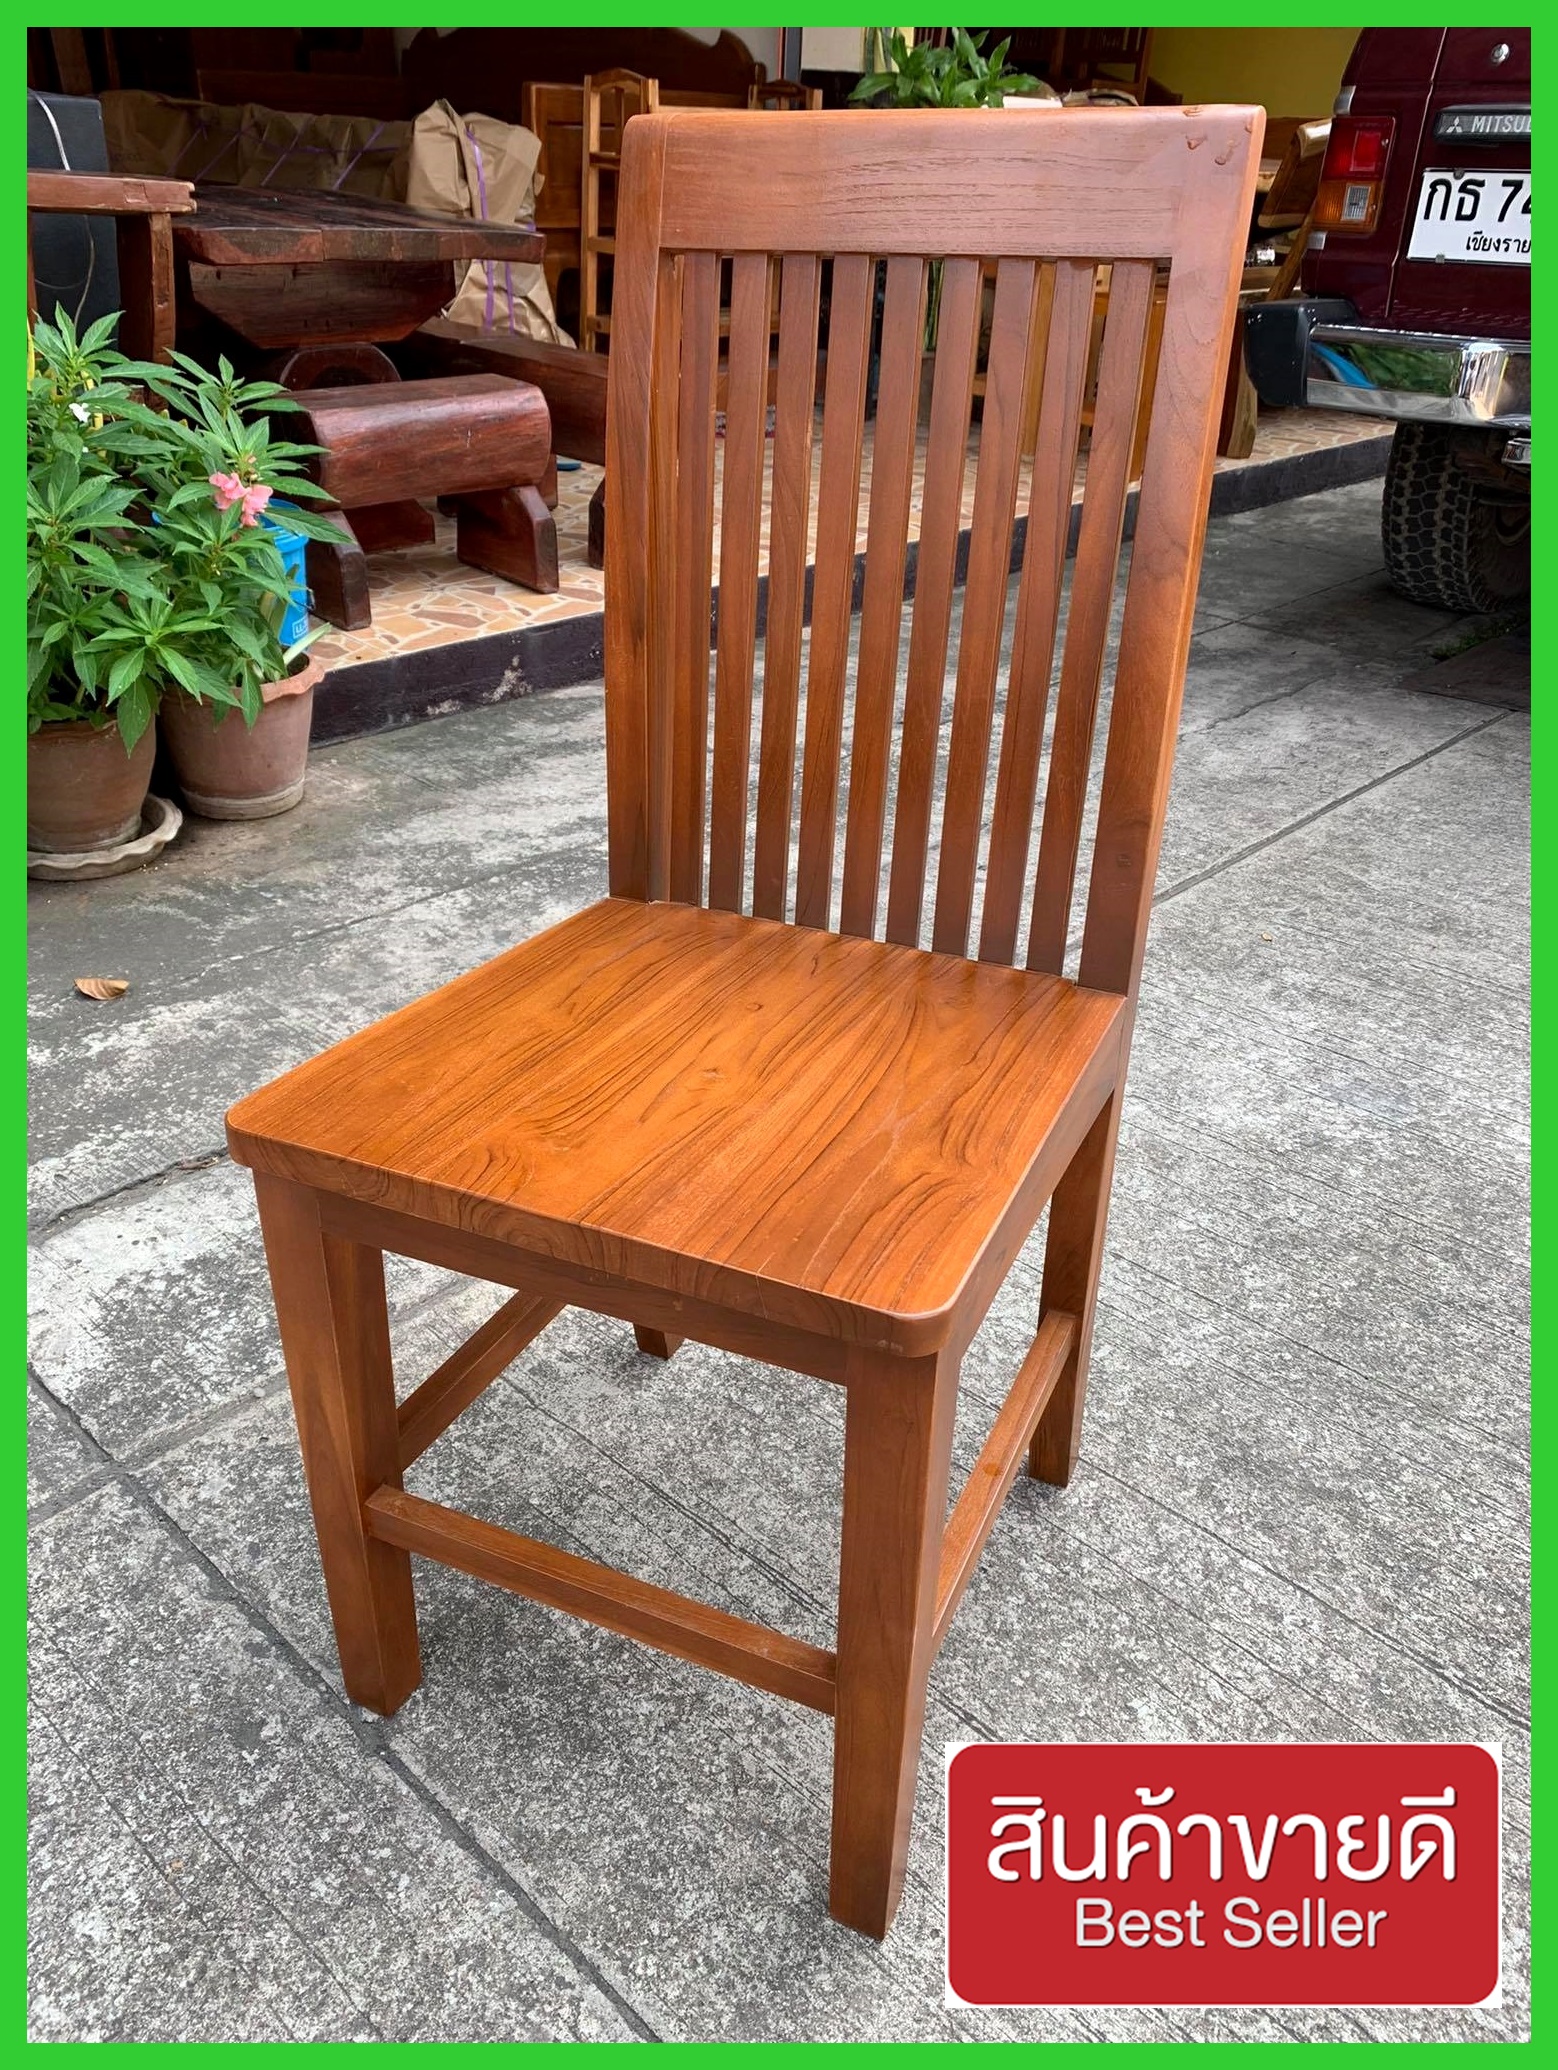 เก้าอี้กินข้าว เก้าอี้ไม้สัก ลายระแนง 9 เส้นเก้าอี้ไม้สักทอง ระแนง เก้าอี้โต๊ะกับข้าว งานไม้สักแท้100% แข็งแรง ทนทาน